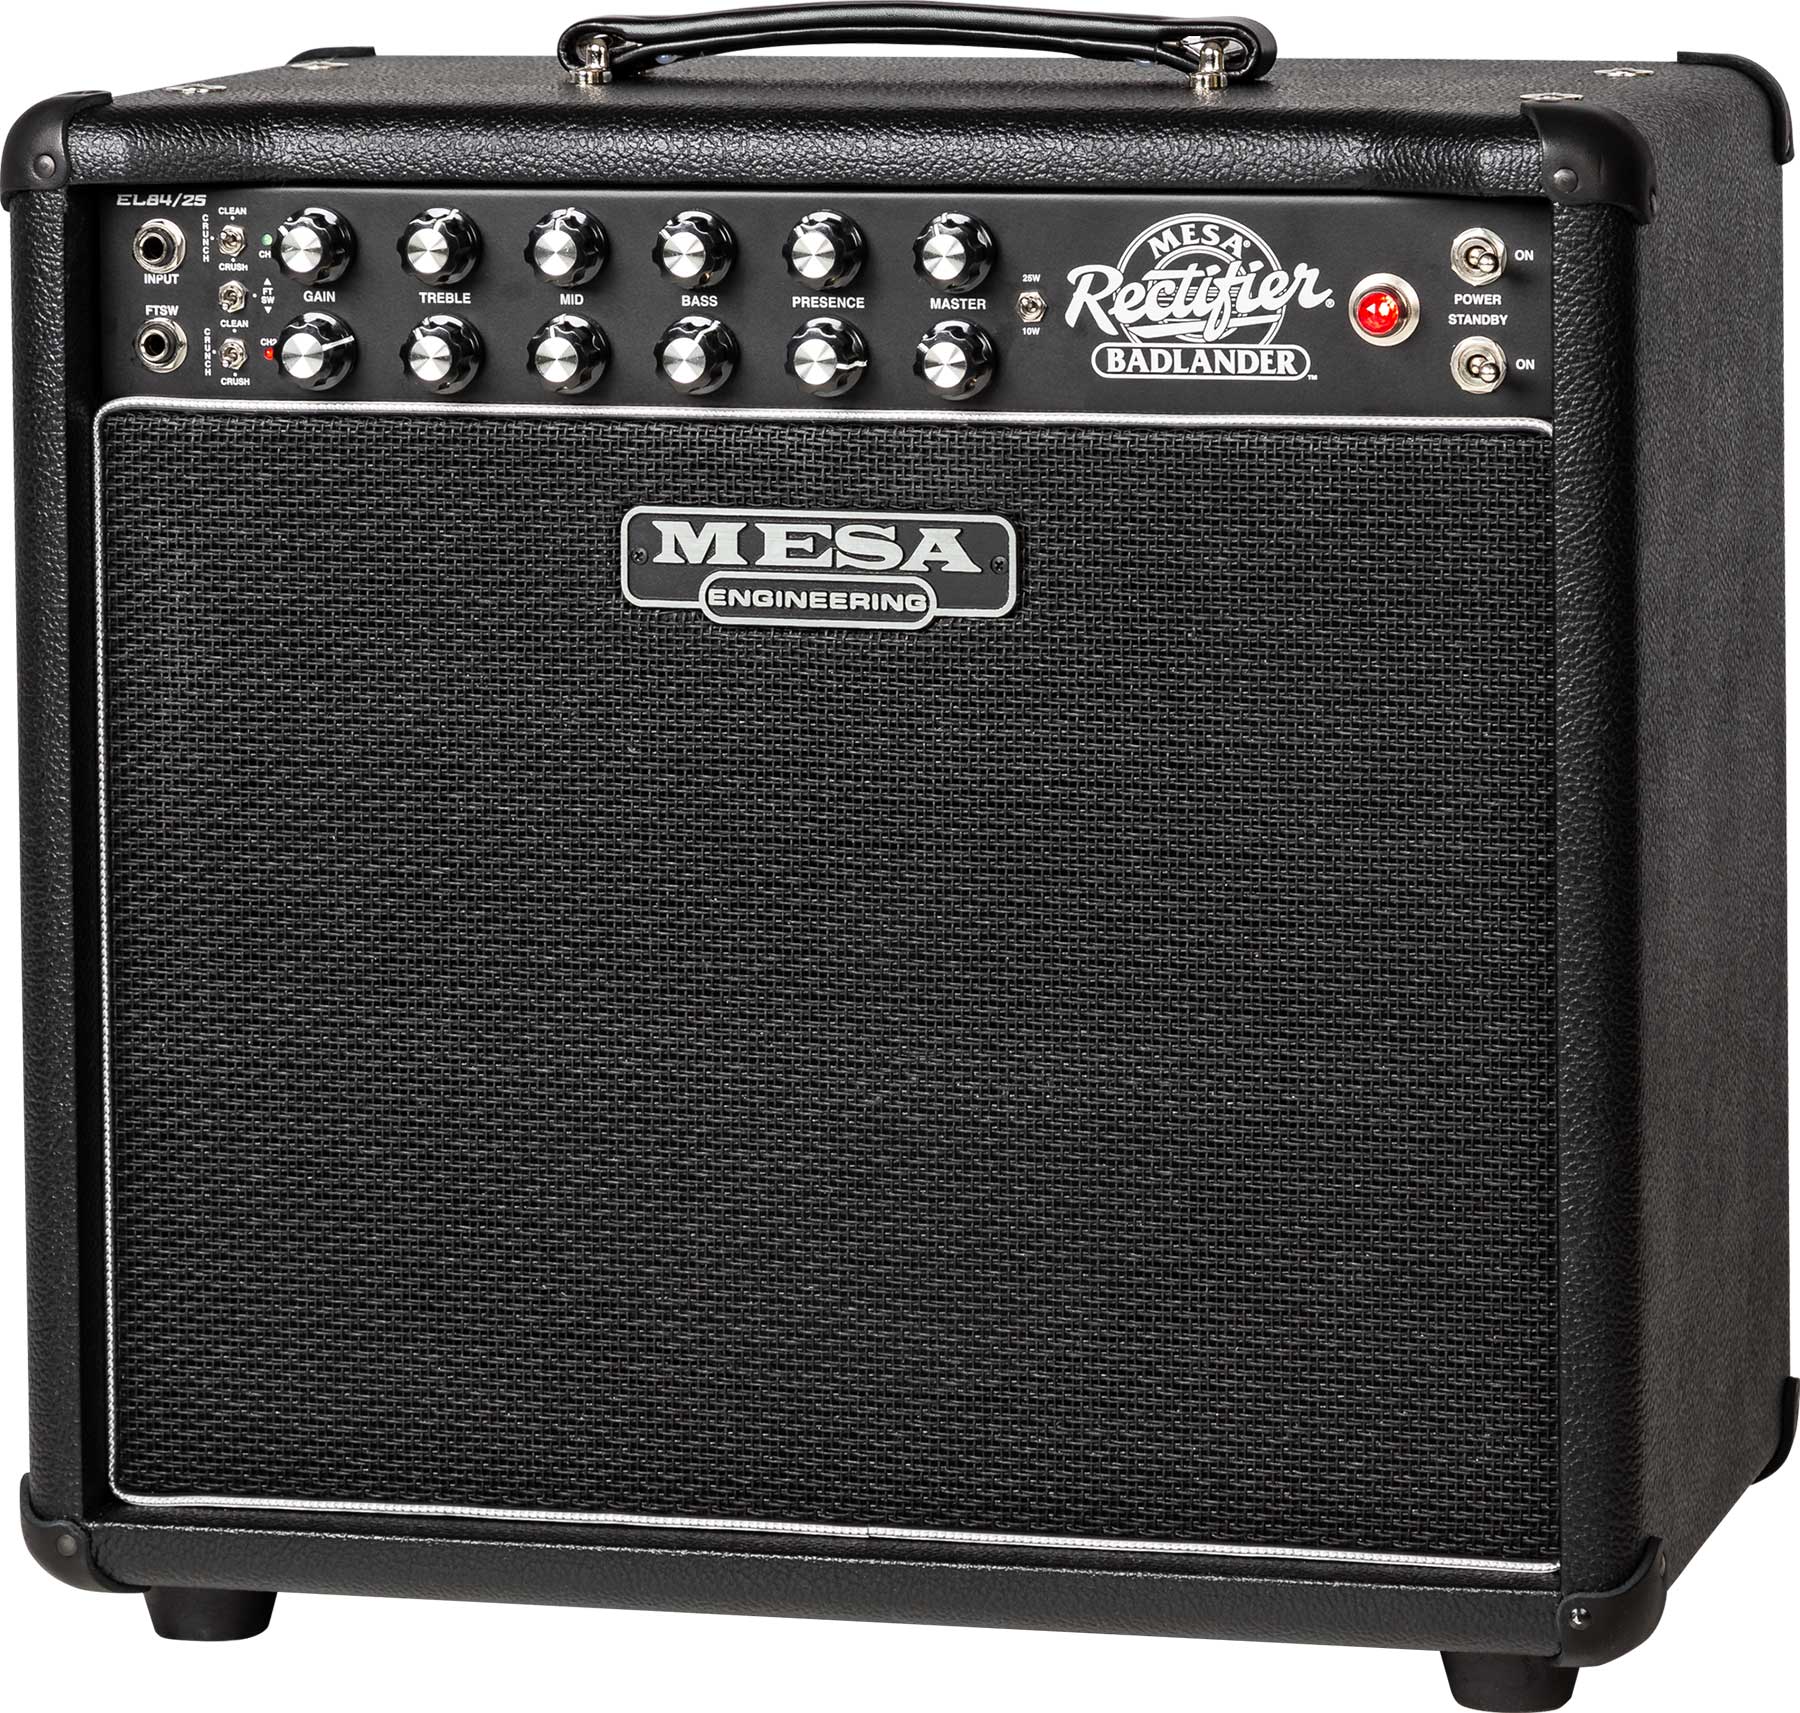 Mesa Boogie Badlander 25 1x12 Combo 10/25w 112 El84 Black Bronco - Combo amplificador para guitarra eléctrica - Variation 1